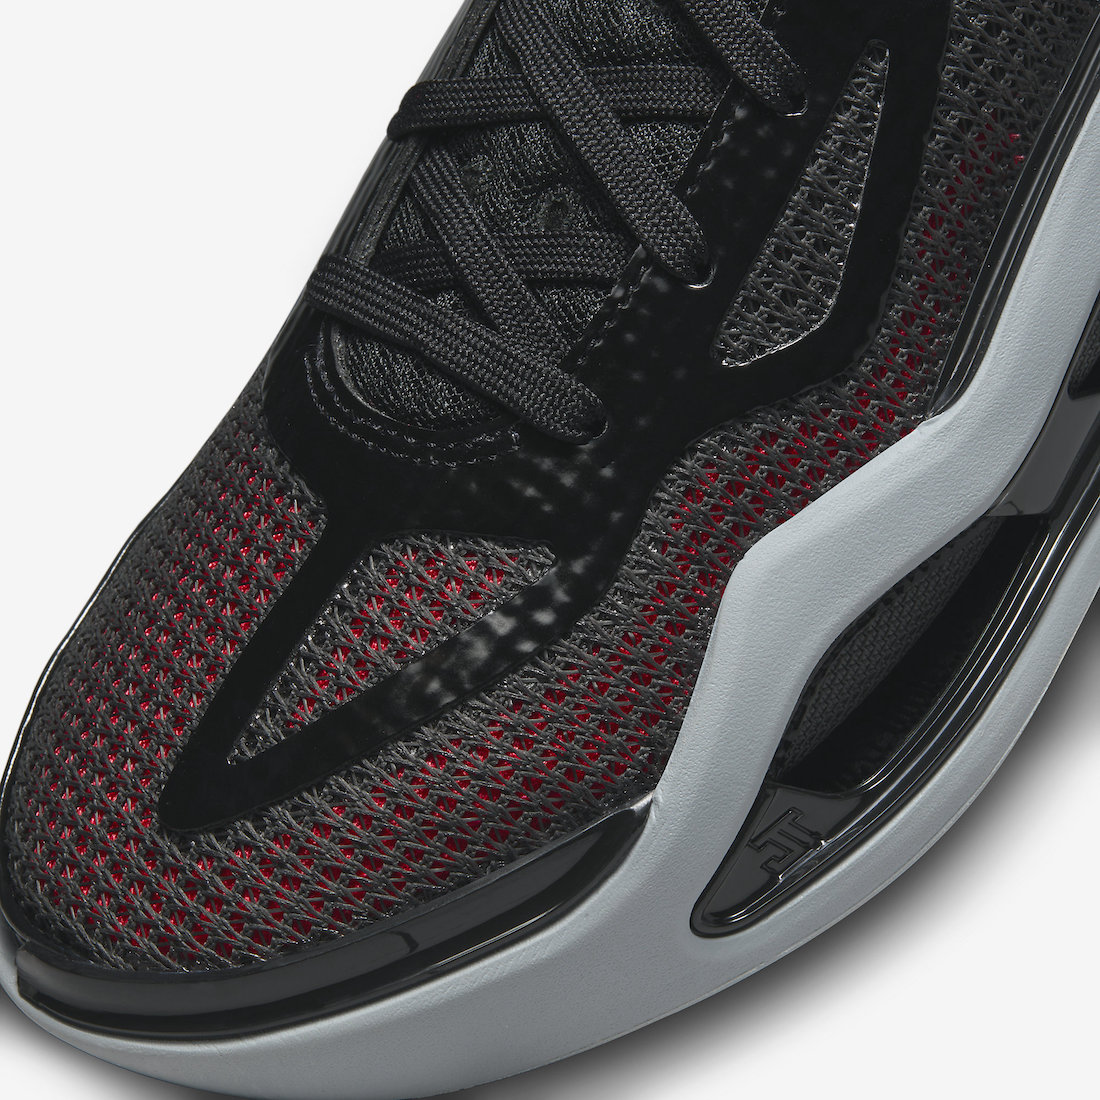 Detailed Look At The Jordan Tatum 1 Incognit-0 PE - Sneaker News